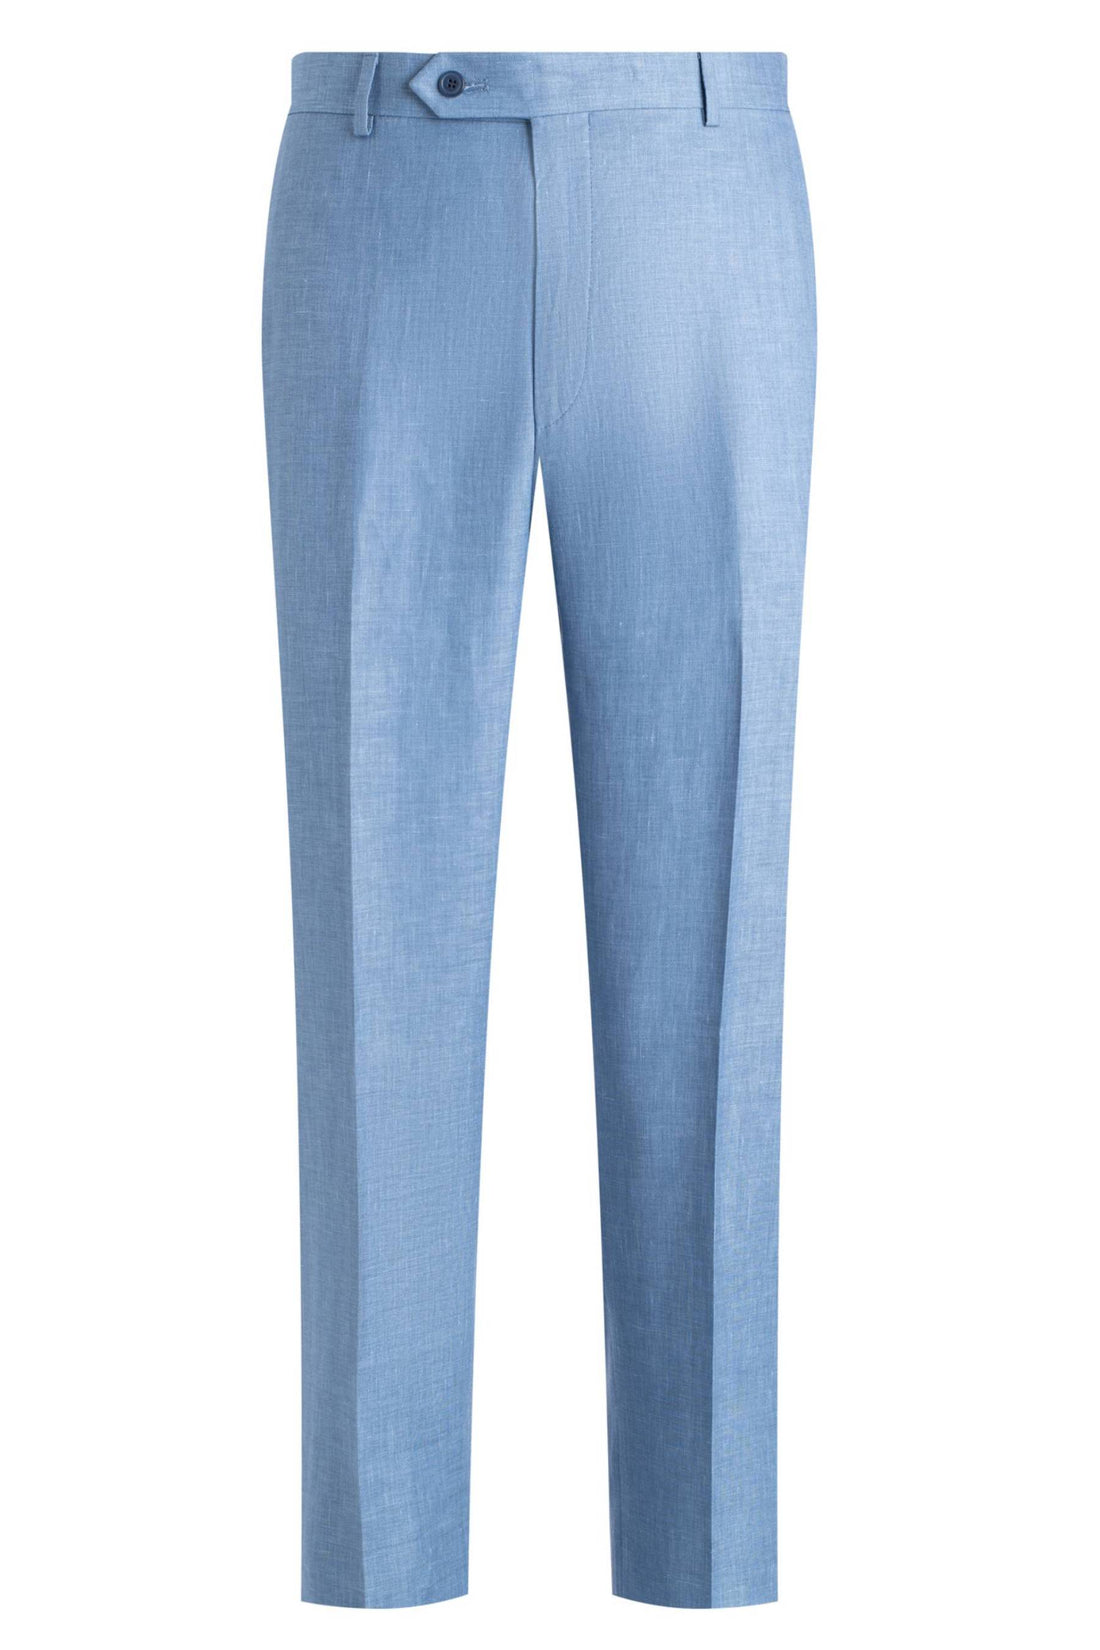 Samuelson Blue Linen Blend Sharkskin Trousers front